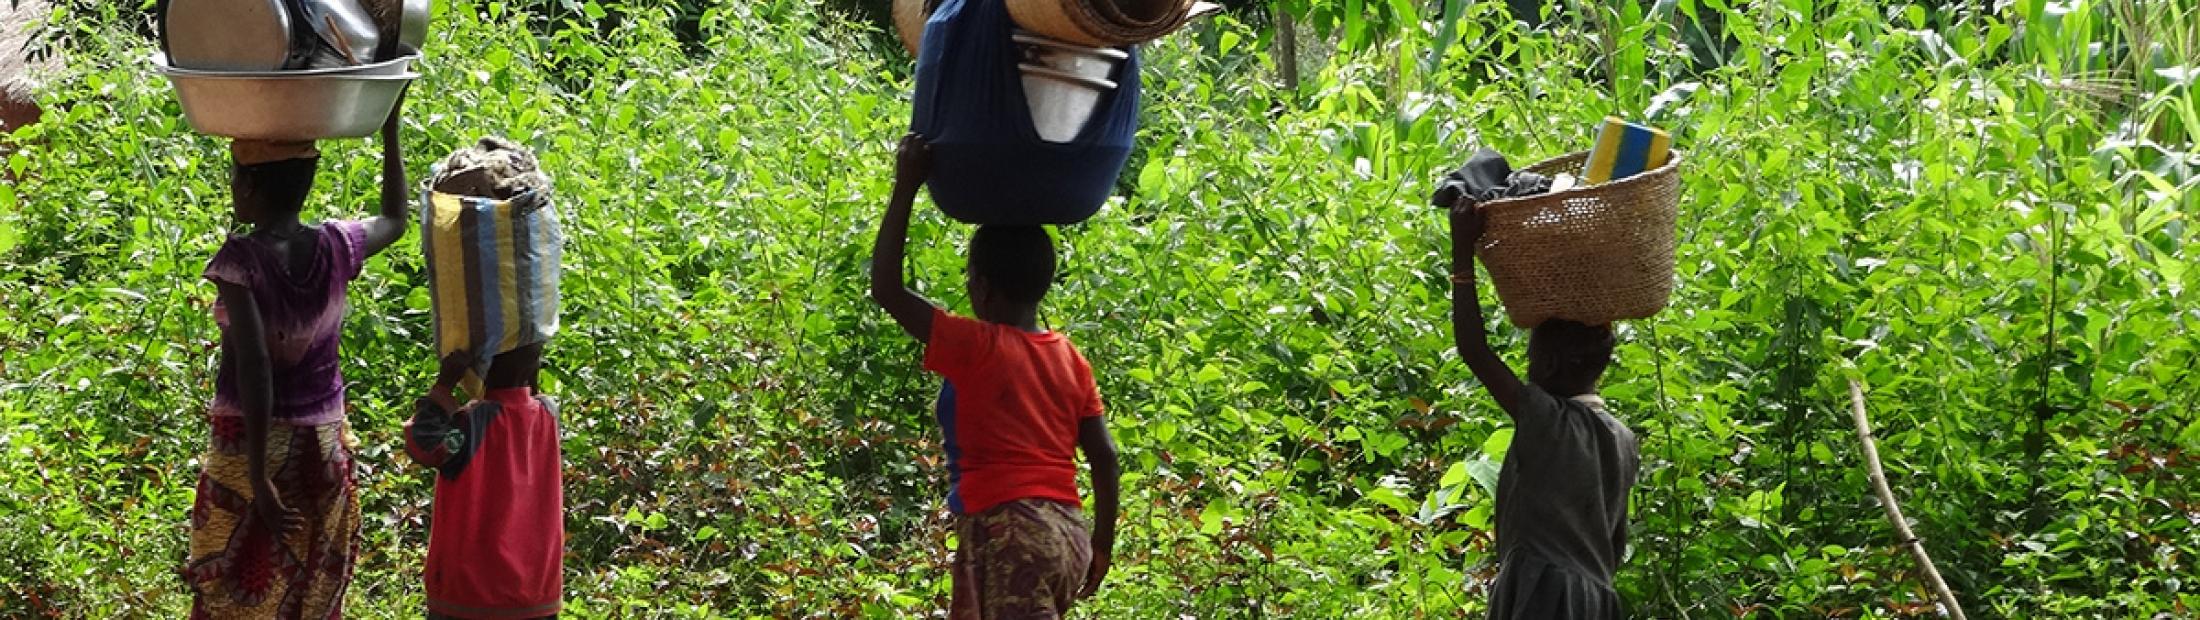 La huida de la República Centroafricana alcanza niveles sin precedentes